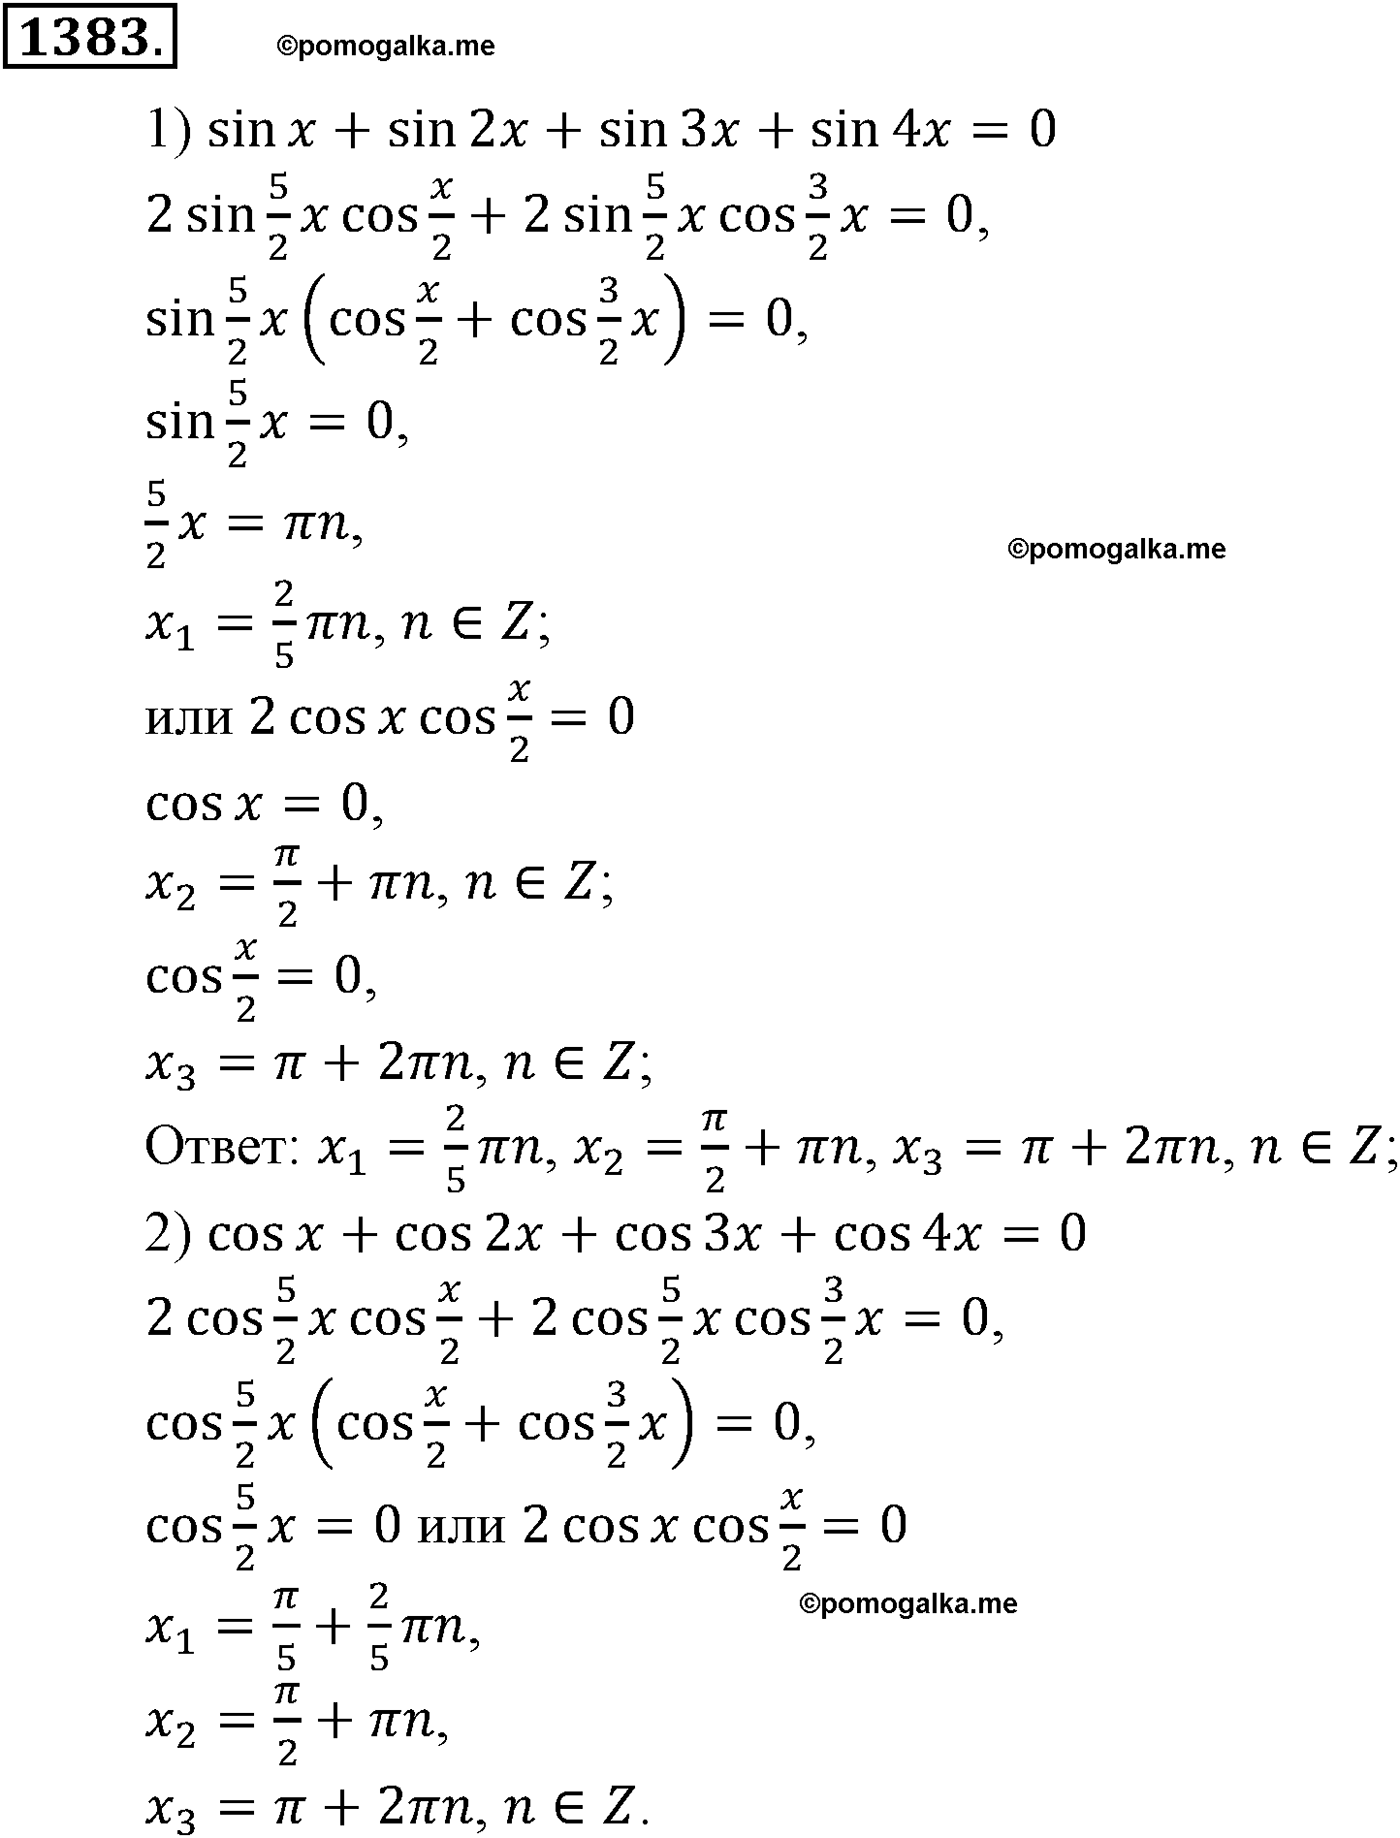 разбор задачи №1383 по алгебре за 10-11 класс из учебника Алимова, Колягина